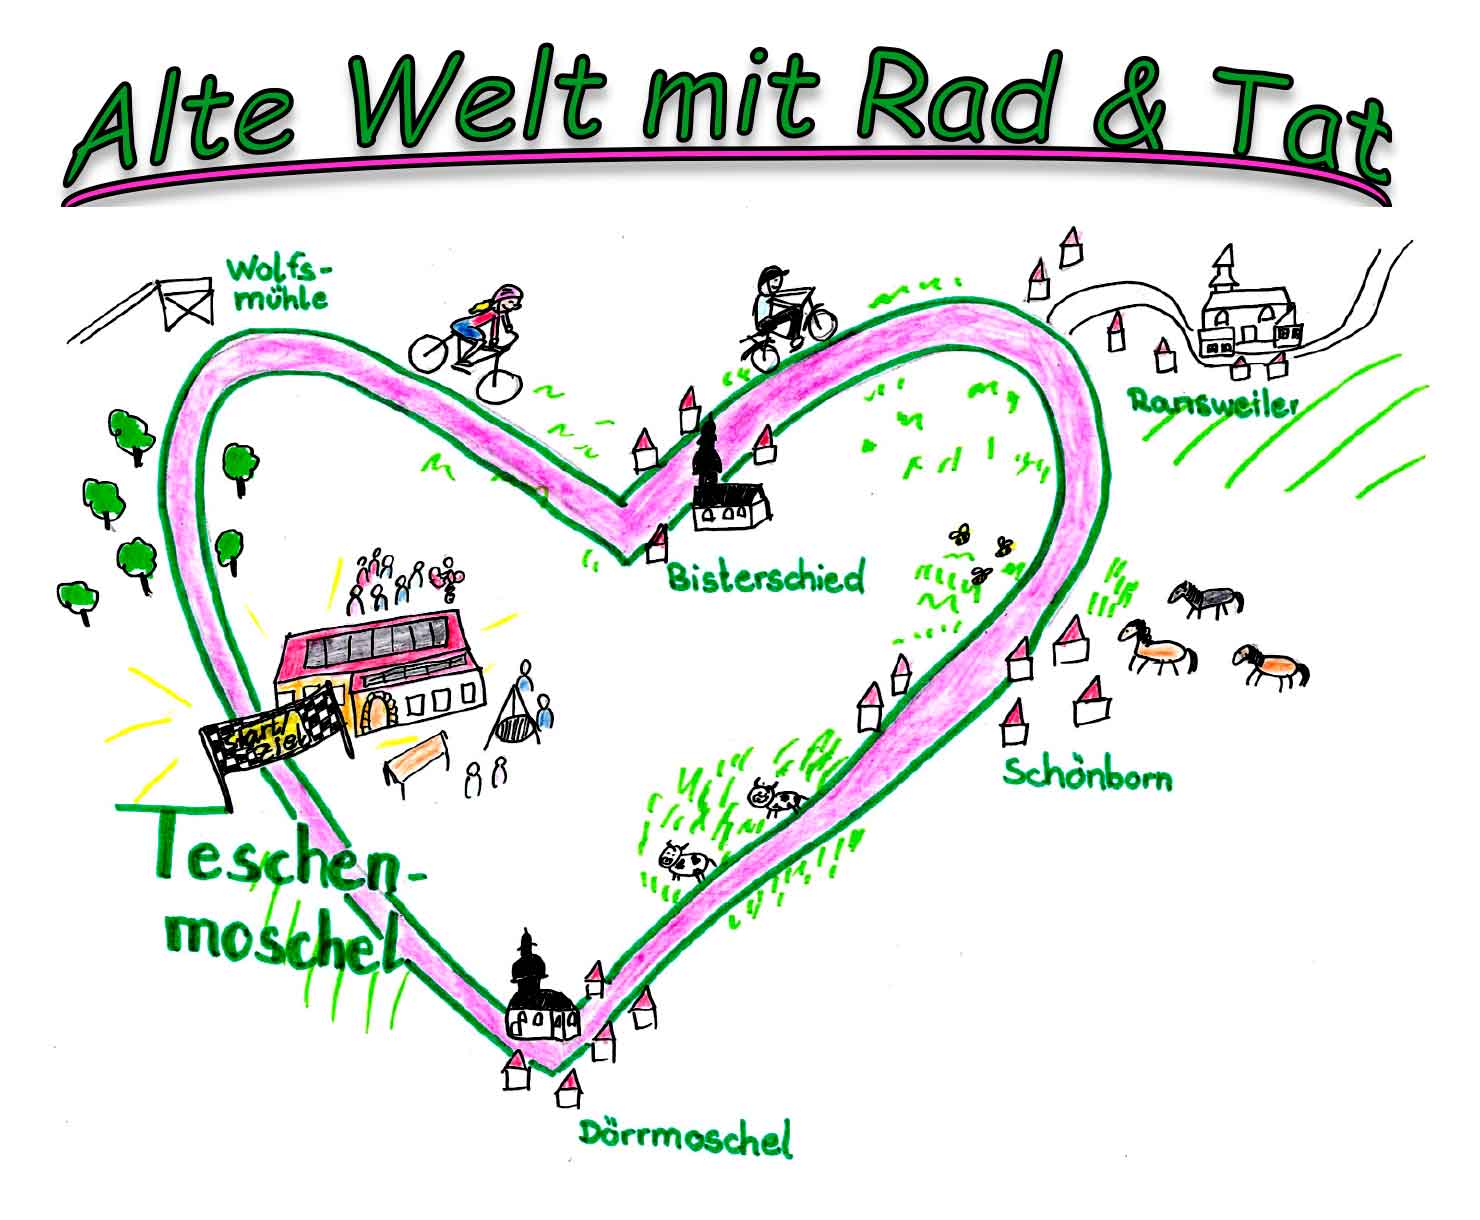 So sieht die Strecke "Alte Welt mit Rad & Tat" aus.